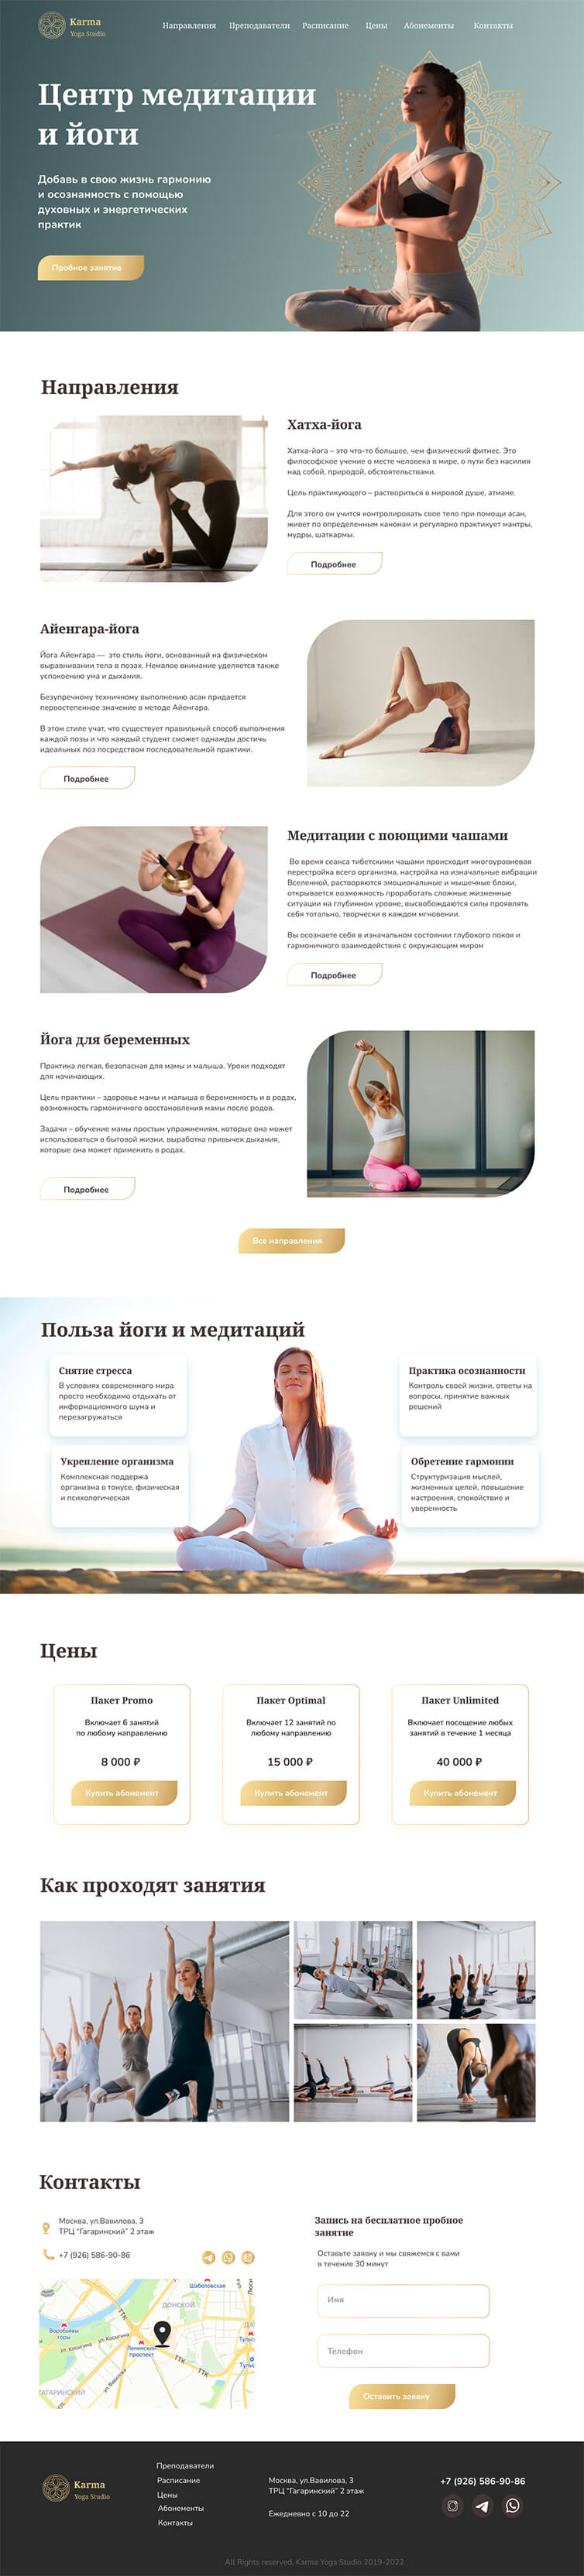 Разработка корпоративного сайта йоги и медитации